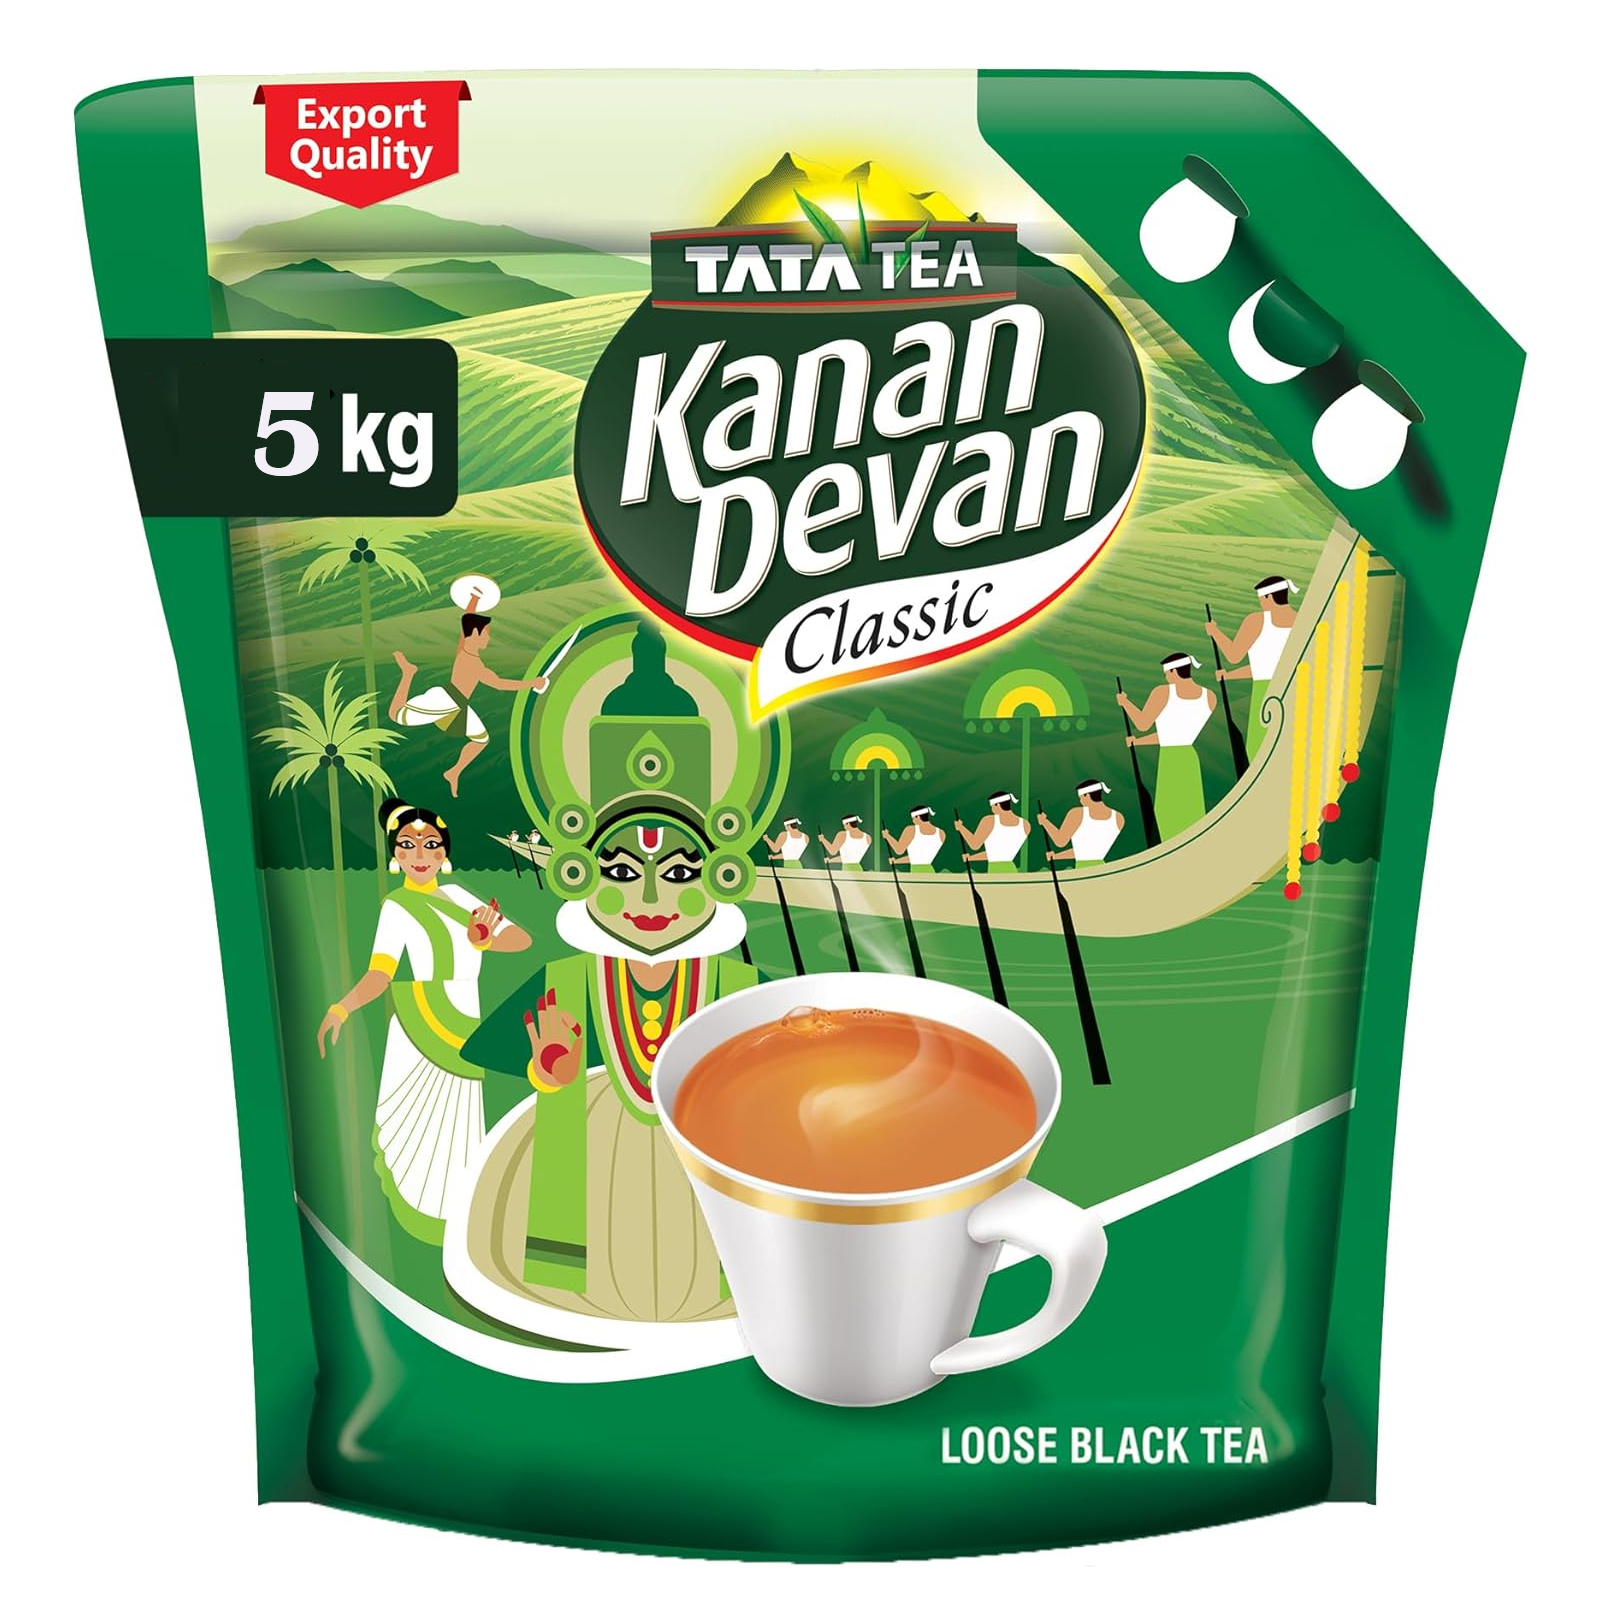 TEA CLASSIC KANAN DEVAN (5 KG)